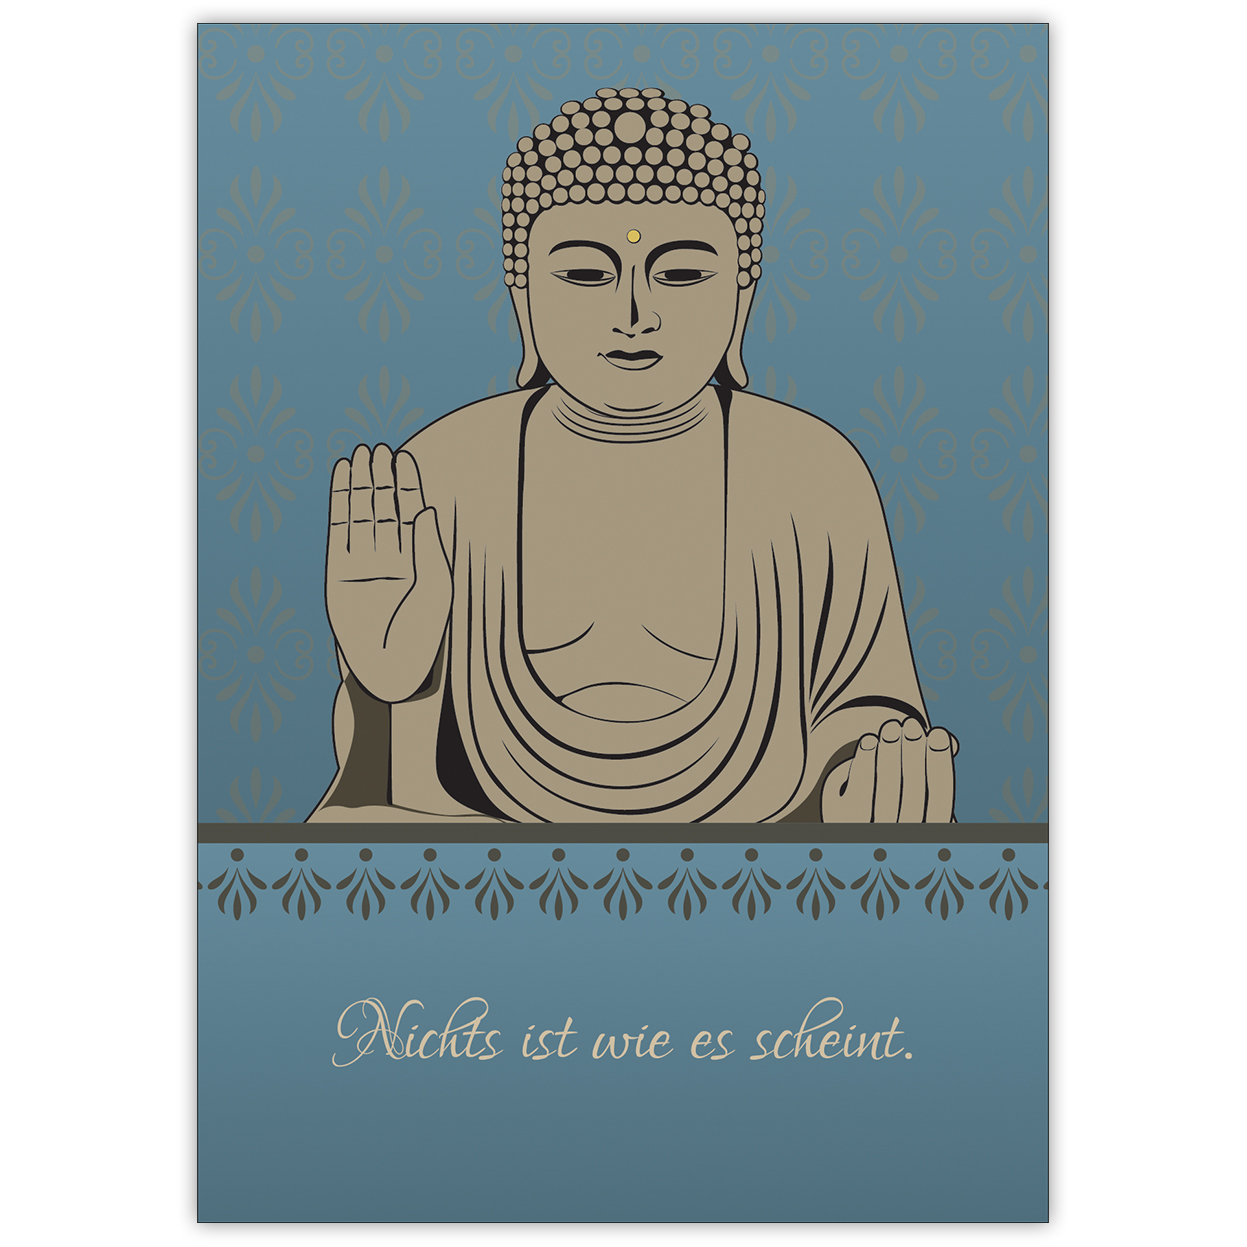 Beistehende Spruchkarte: "Nichts ist wie es scheint" mit schönem Buddha auf blau